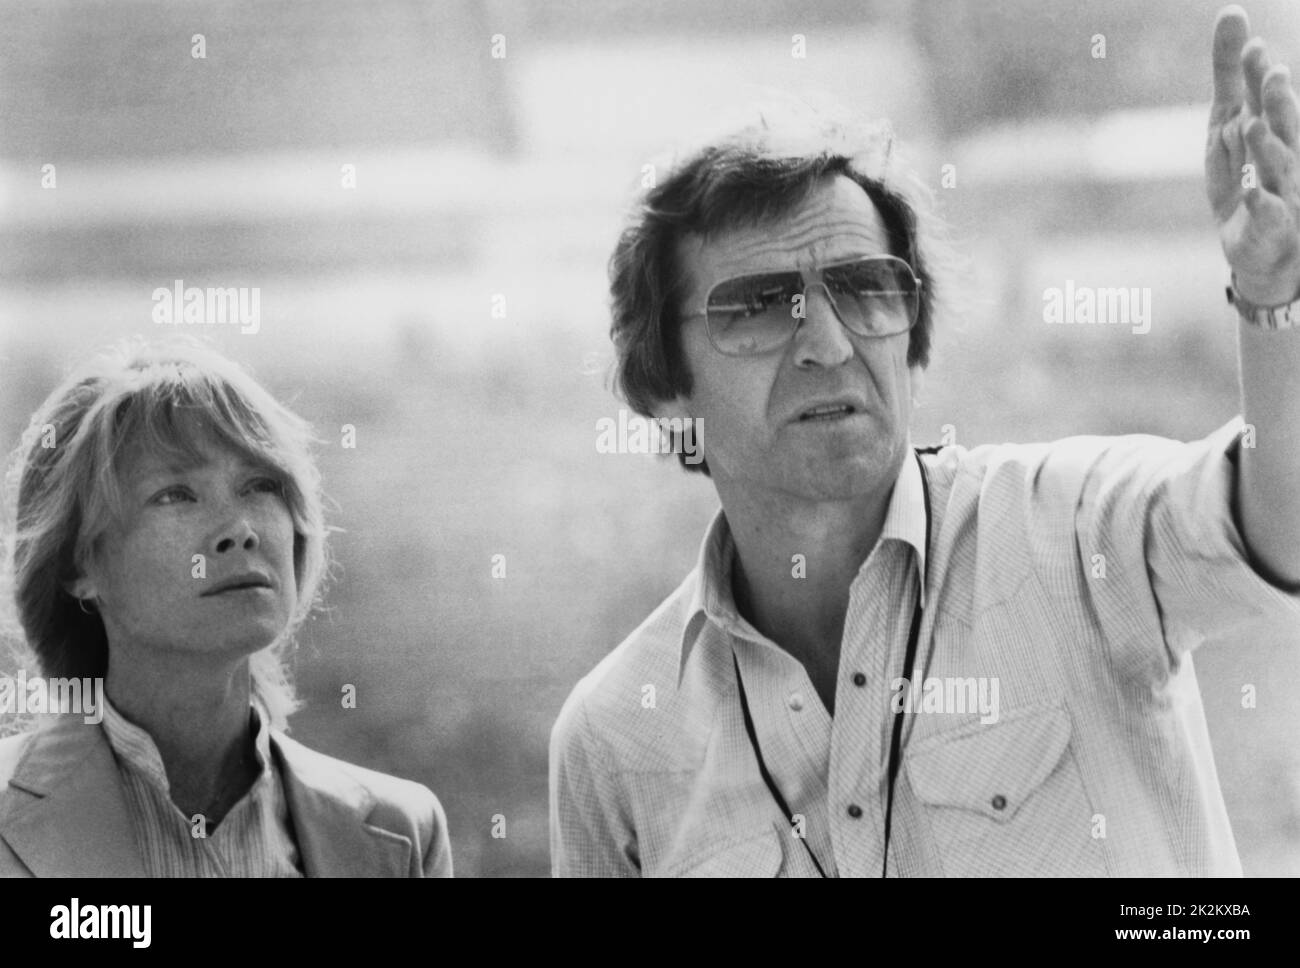 Année manquante : 1982 Etats-Unis Directeur : Costa-Gavras Sissy Spacek, Costa-Gavras photo Golden Palm Cannes 1982 Banque D'Images